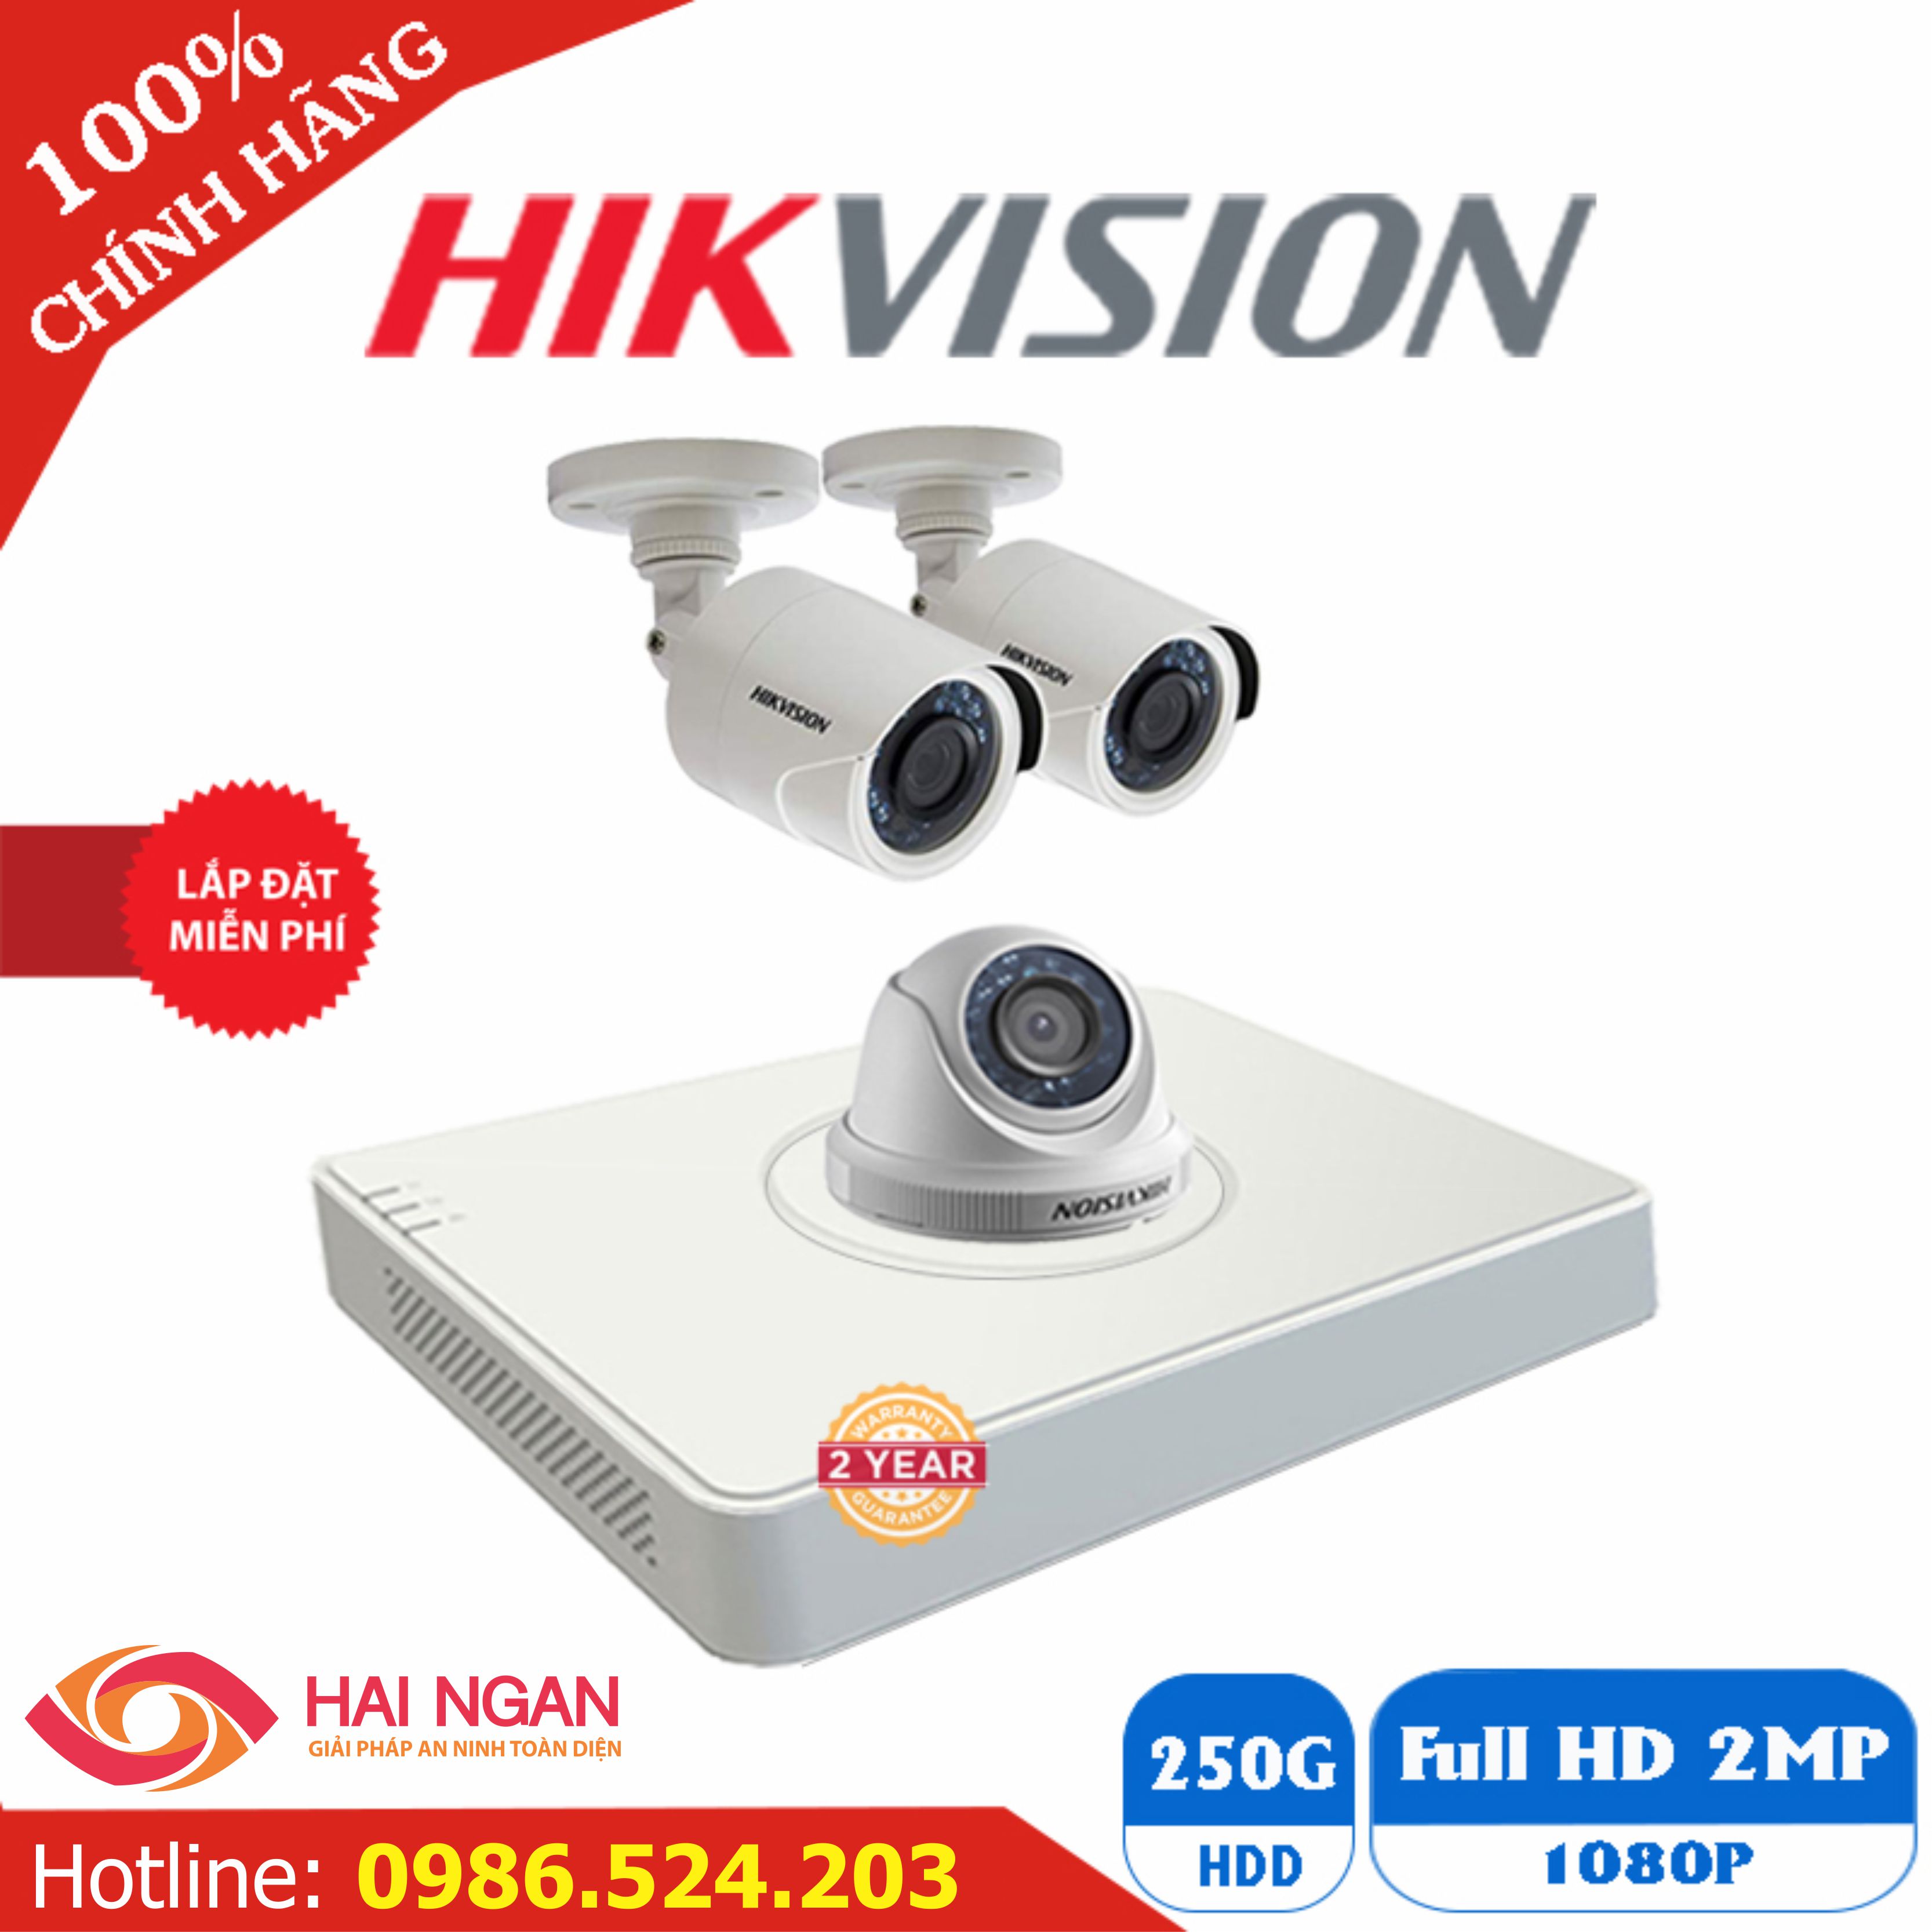 Lắp Đặt Trọn Bộ 03 Camera Giám Sát Hikvision Full HD HN-3CE563D0T